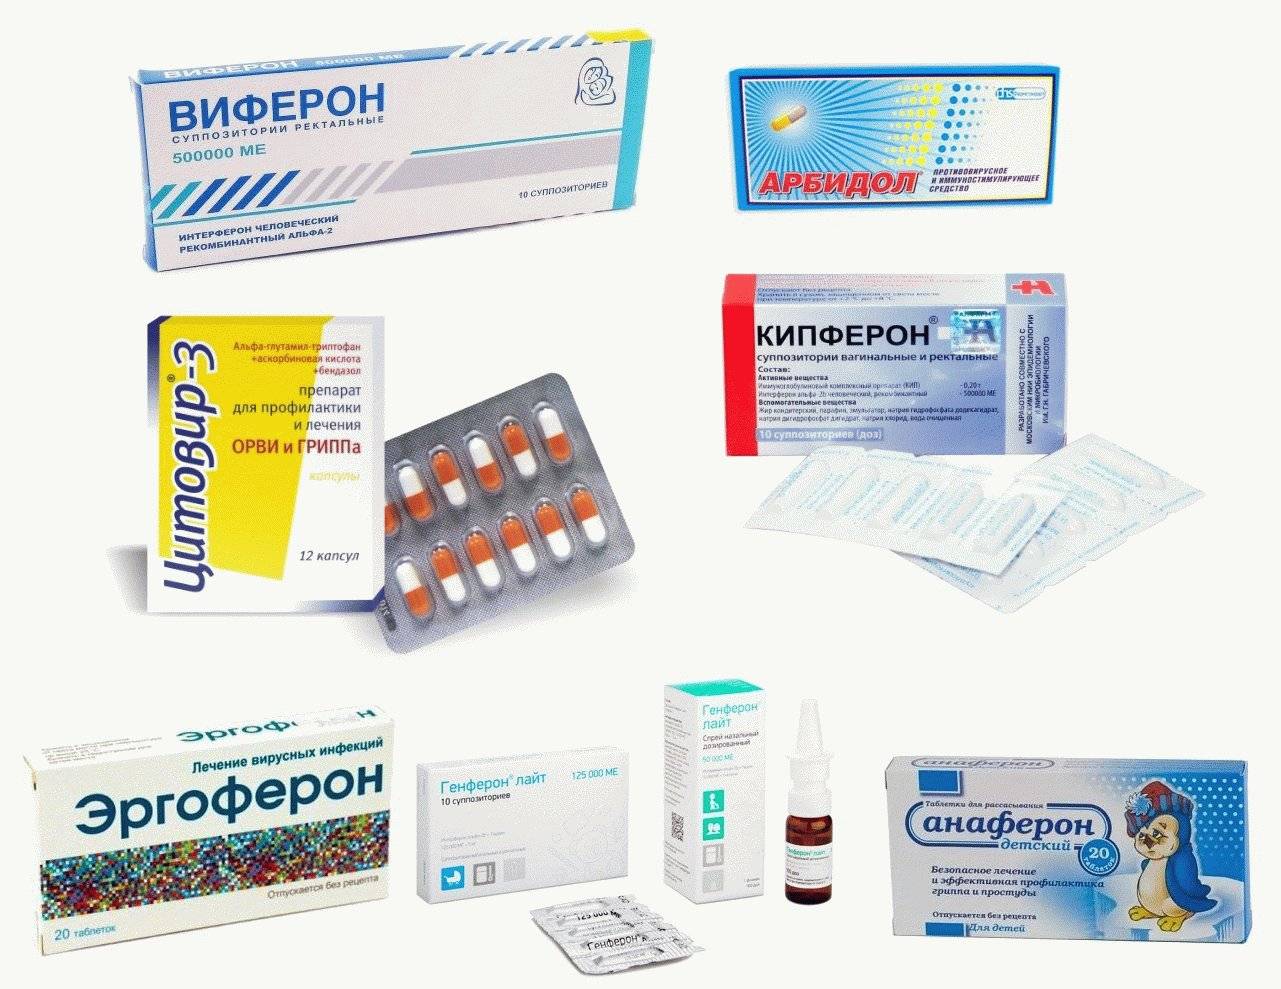 Ибупрофен при гриппе и простуде: можно ли применять и эффективность